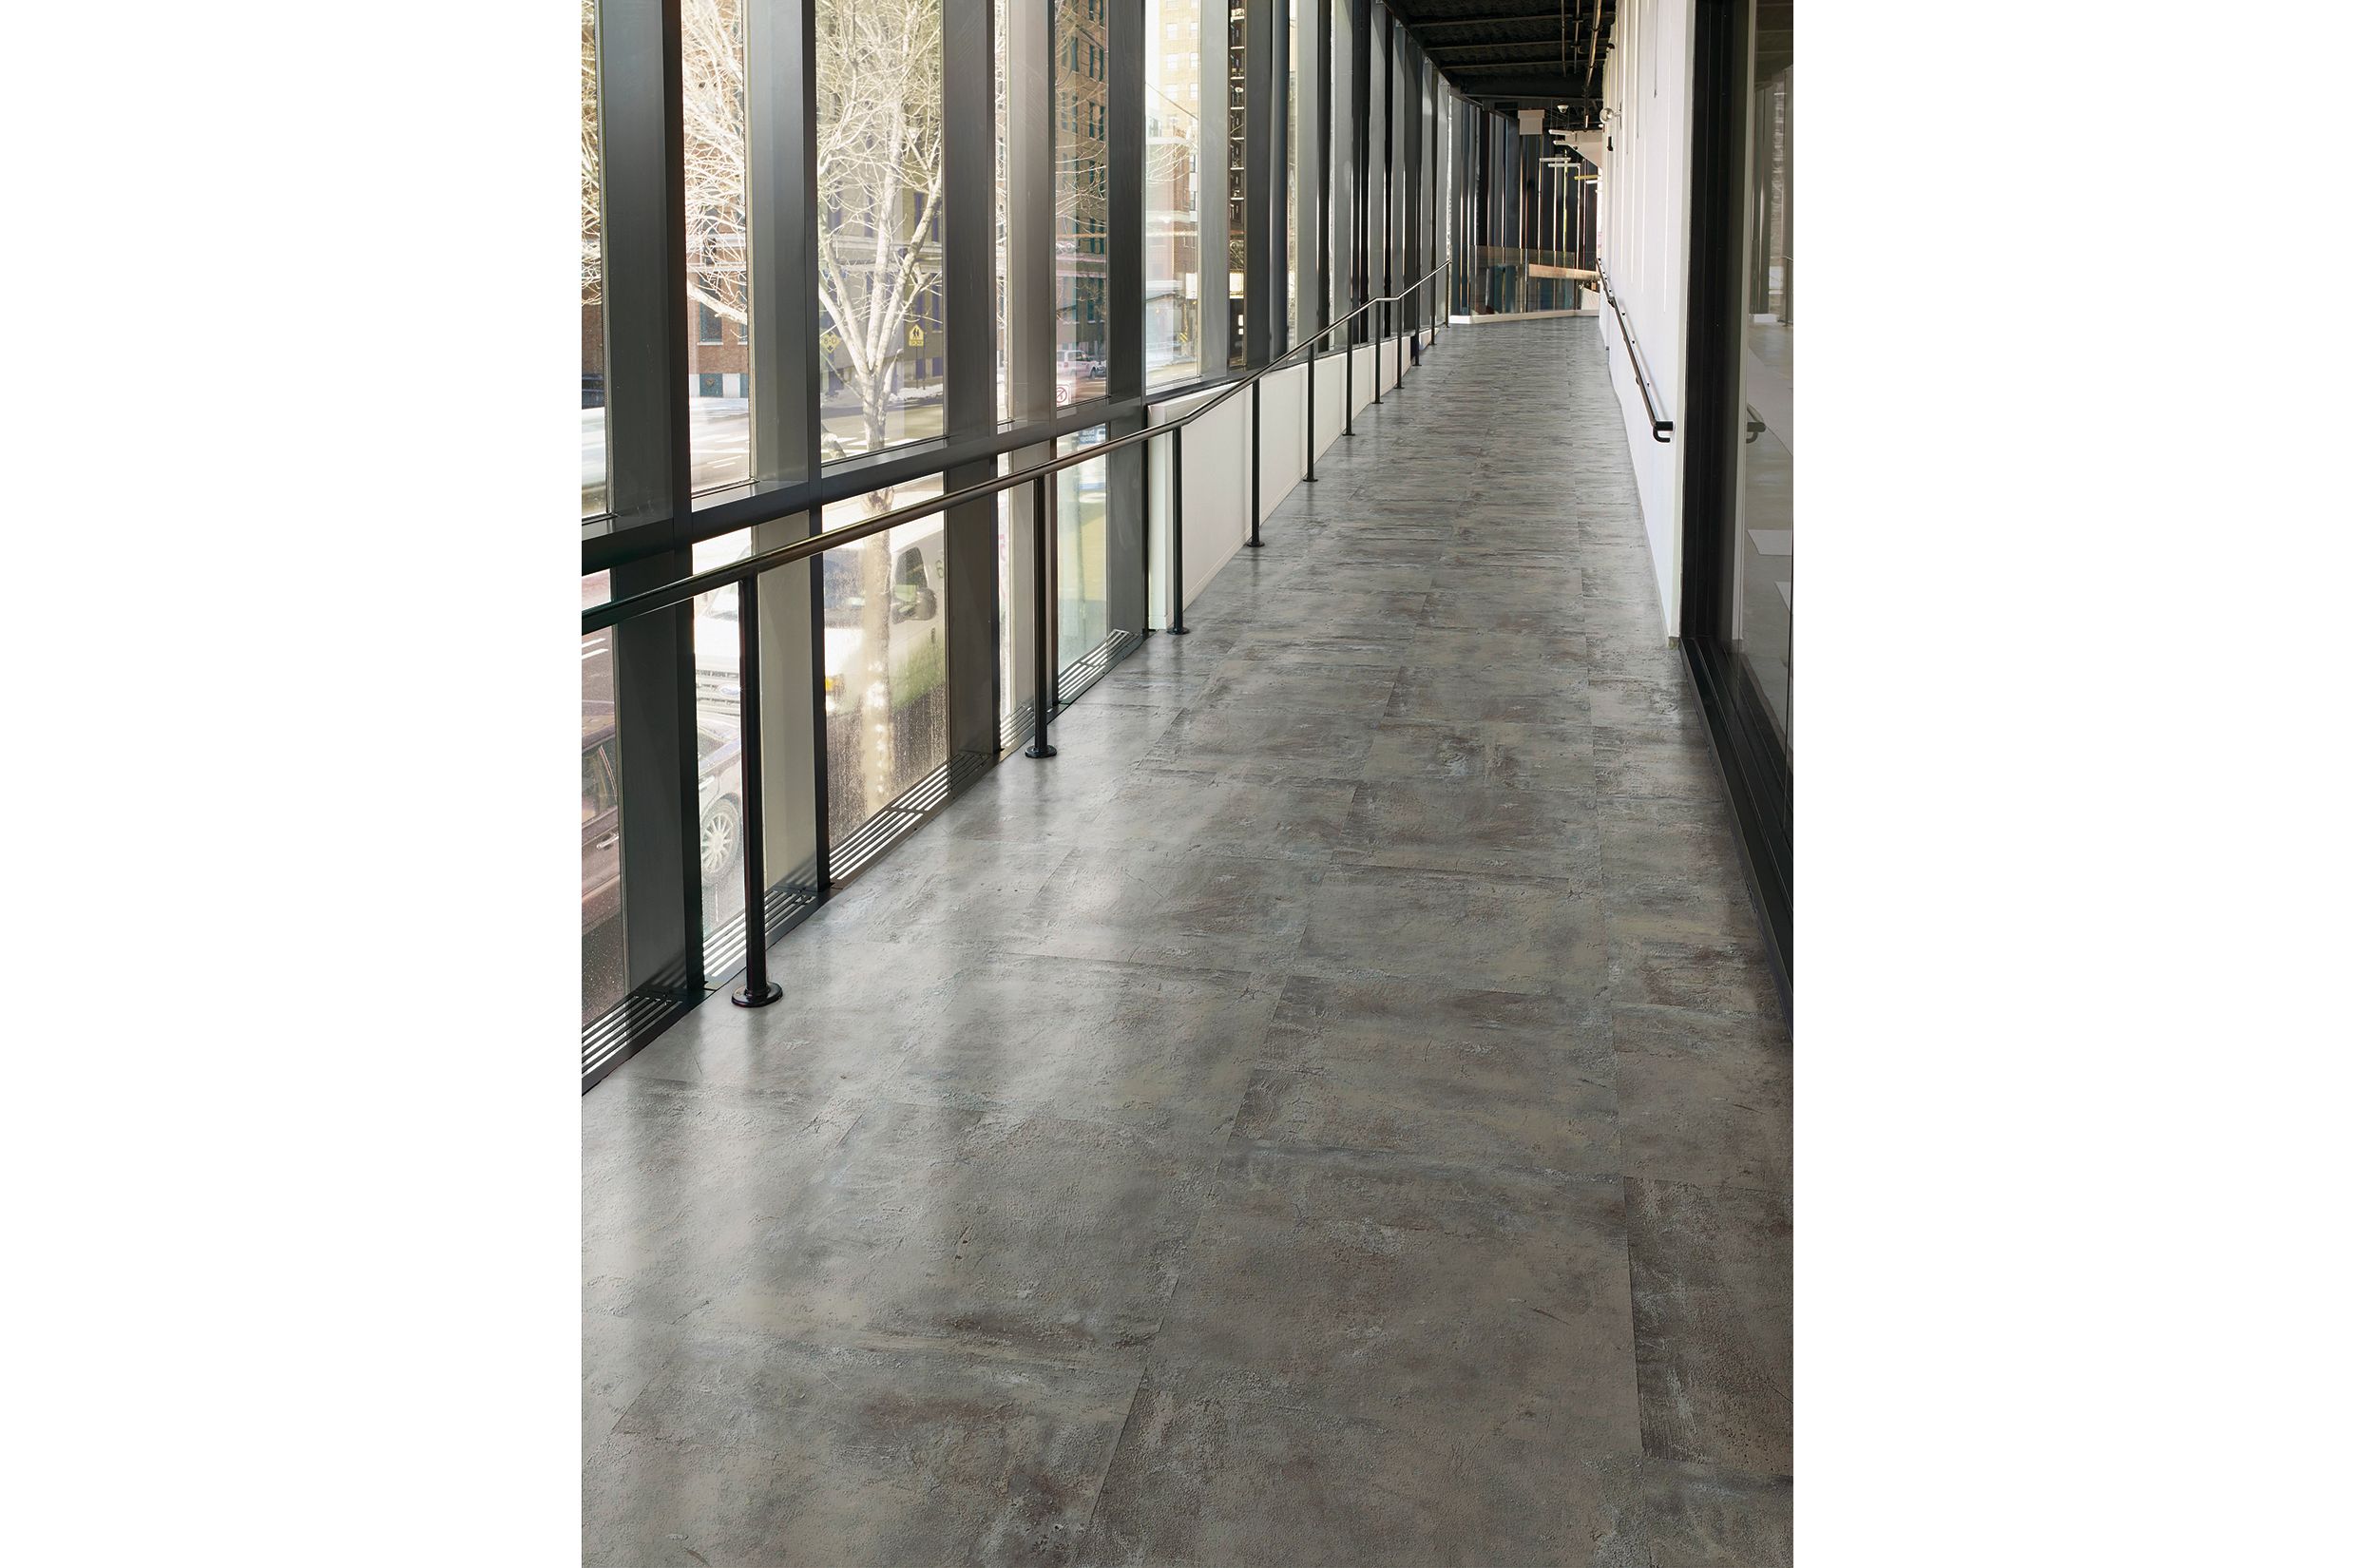 Interface Textured Stones LVT in corridor with railing número de imagen 1